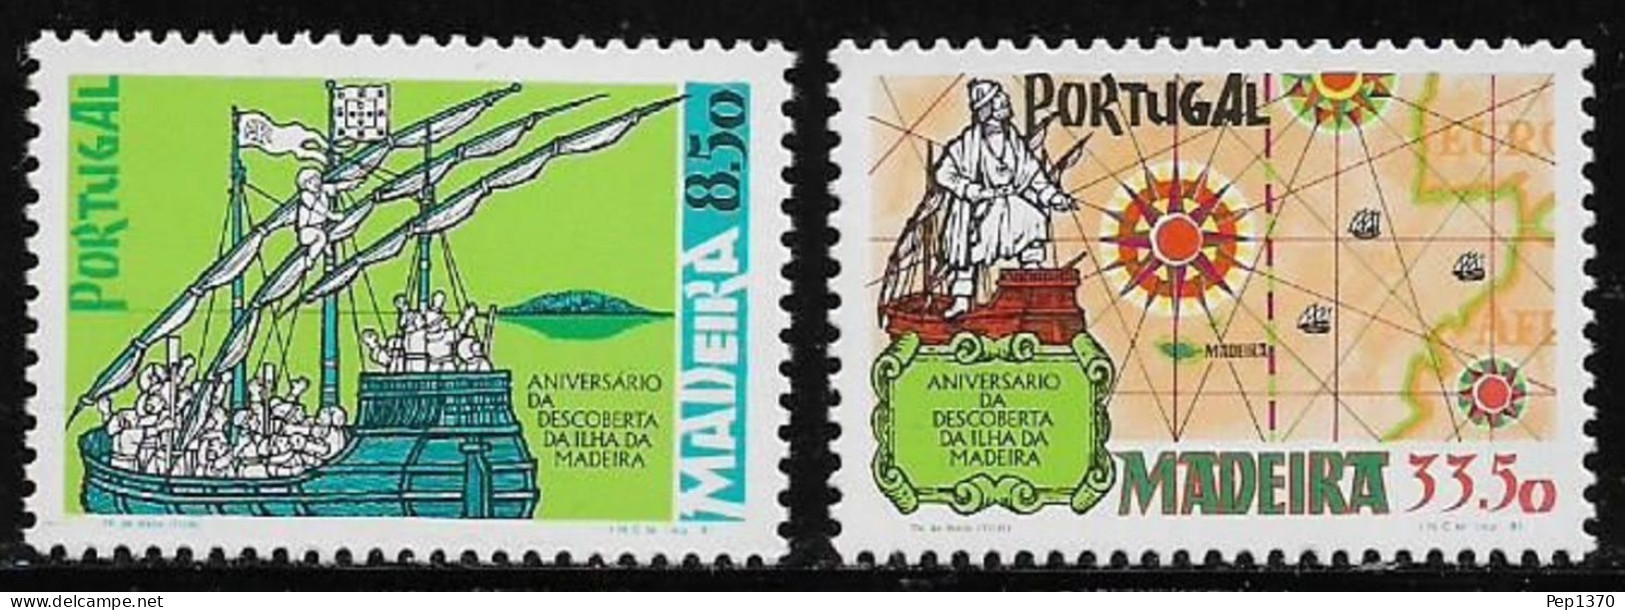 MADEIRA 1981 - ANIVERSARIO DEL DESCUBRIMIENTO DE LA ISLA DE MADEIRA - YVERT 76/77** - Schiffe